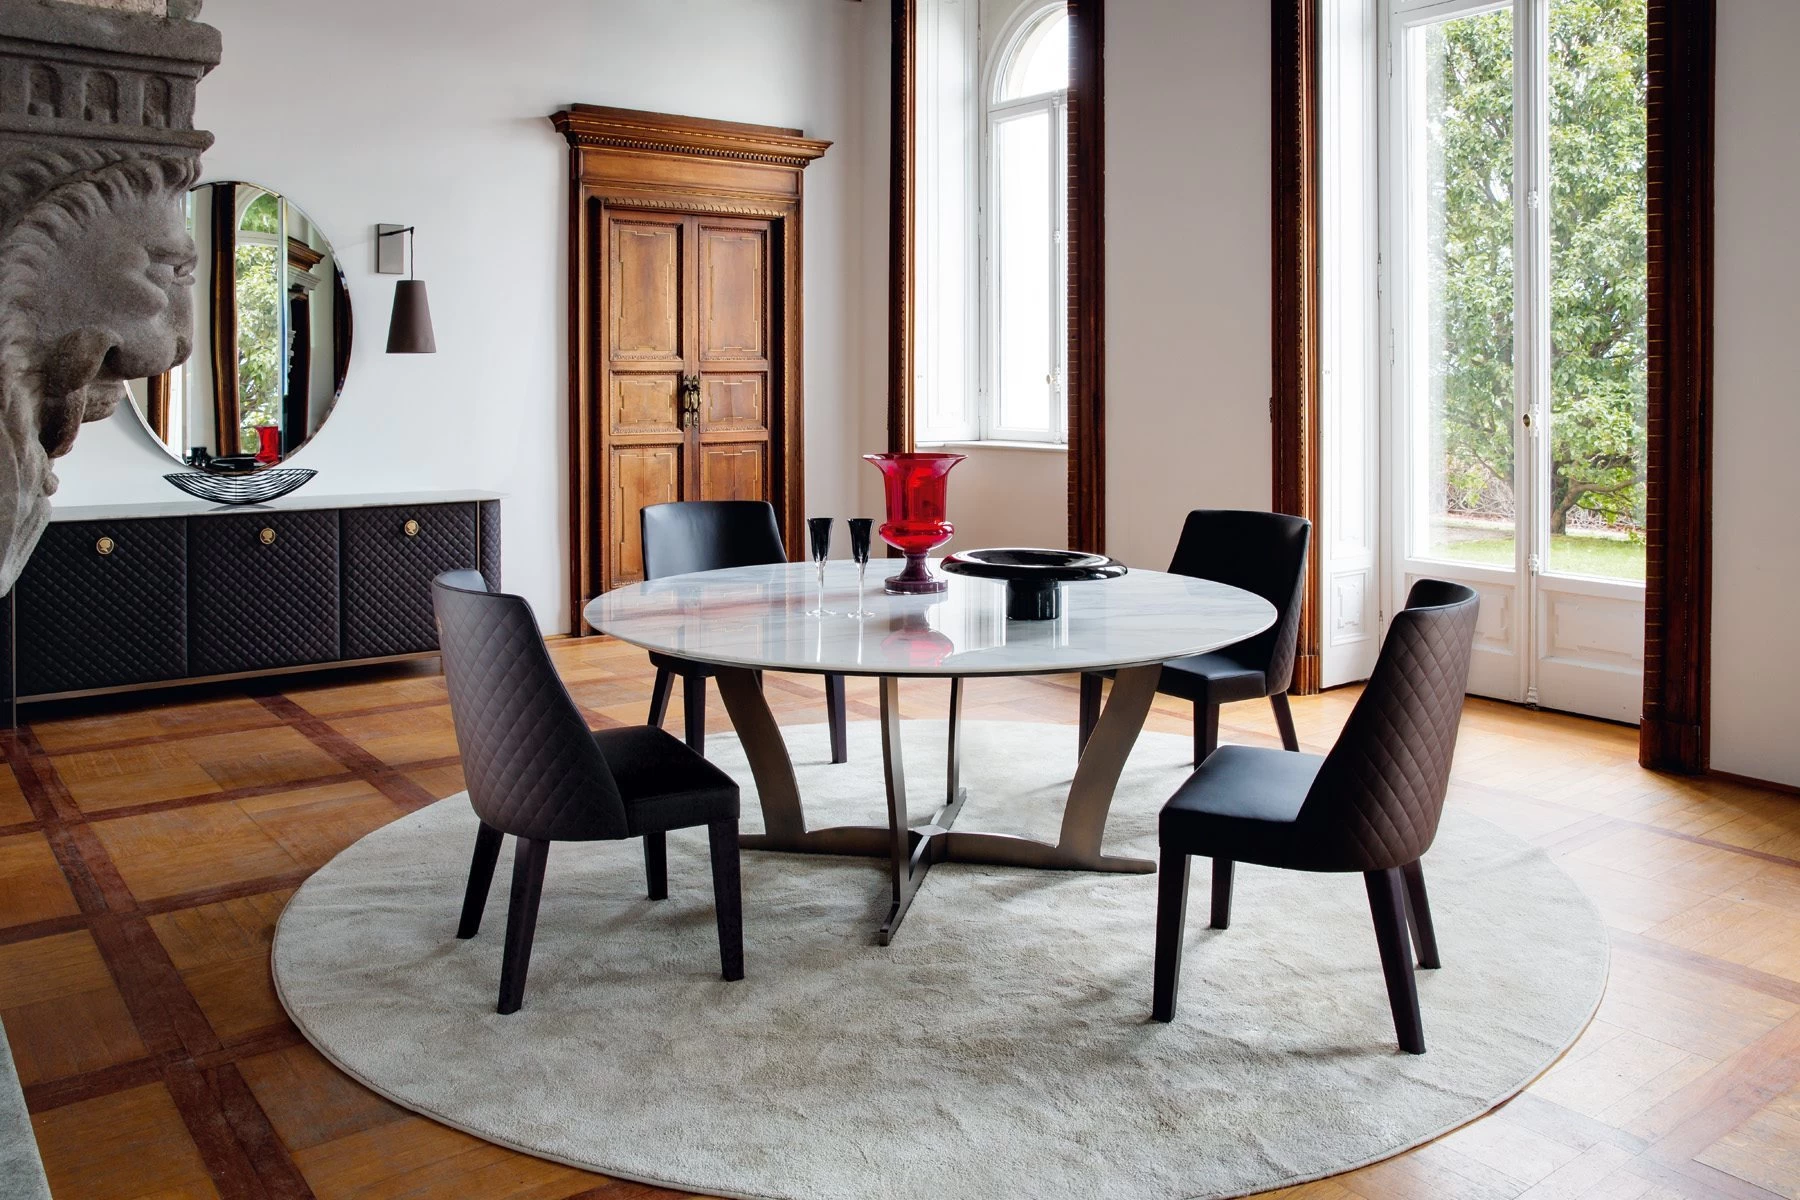 Designový interiér, který snoubí historickou esenci se současností. Kulatý mramorový stůl je srdcem jídelny a luxusní kožené židle neslibují nic menšího, než nekonečný komfort při stolování. Klasické prvky, jako jsou dřevěné parkety a zárubně v kombinaci s eklektickou elegancí? Za nás rozhodně ano!